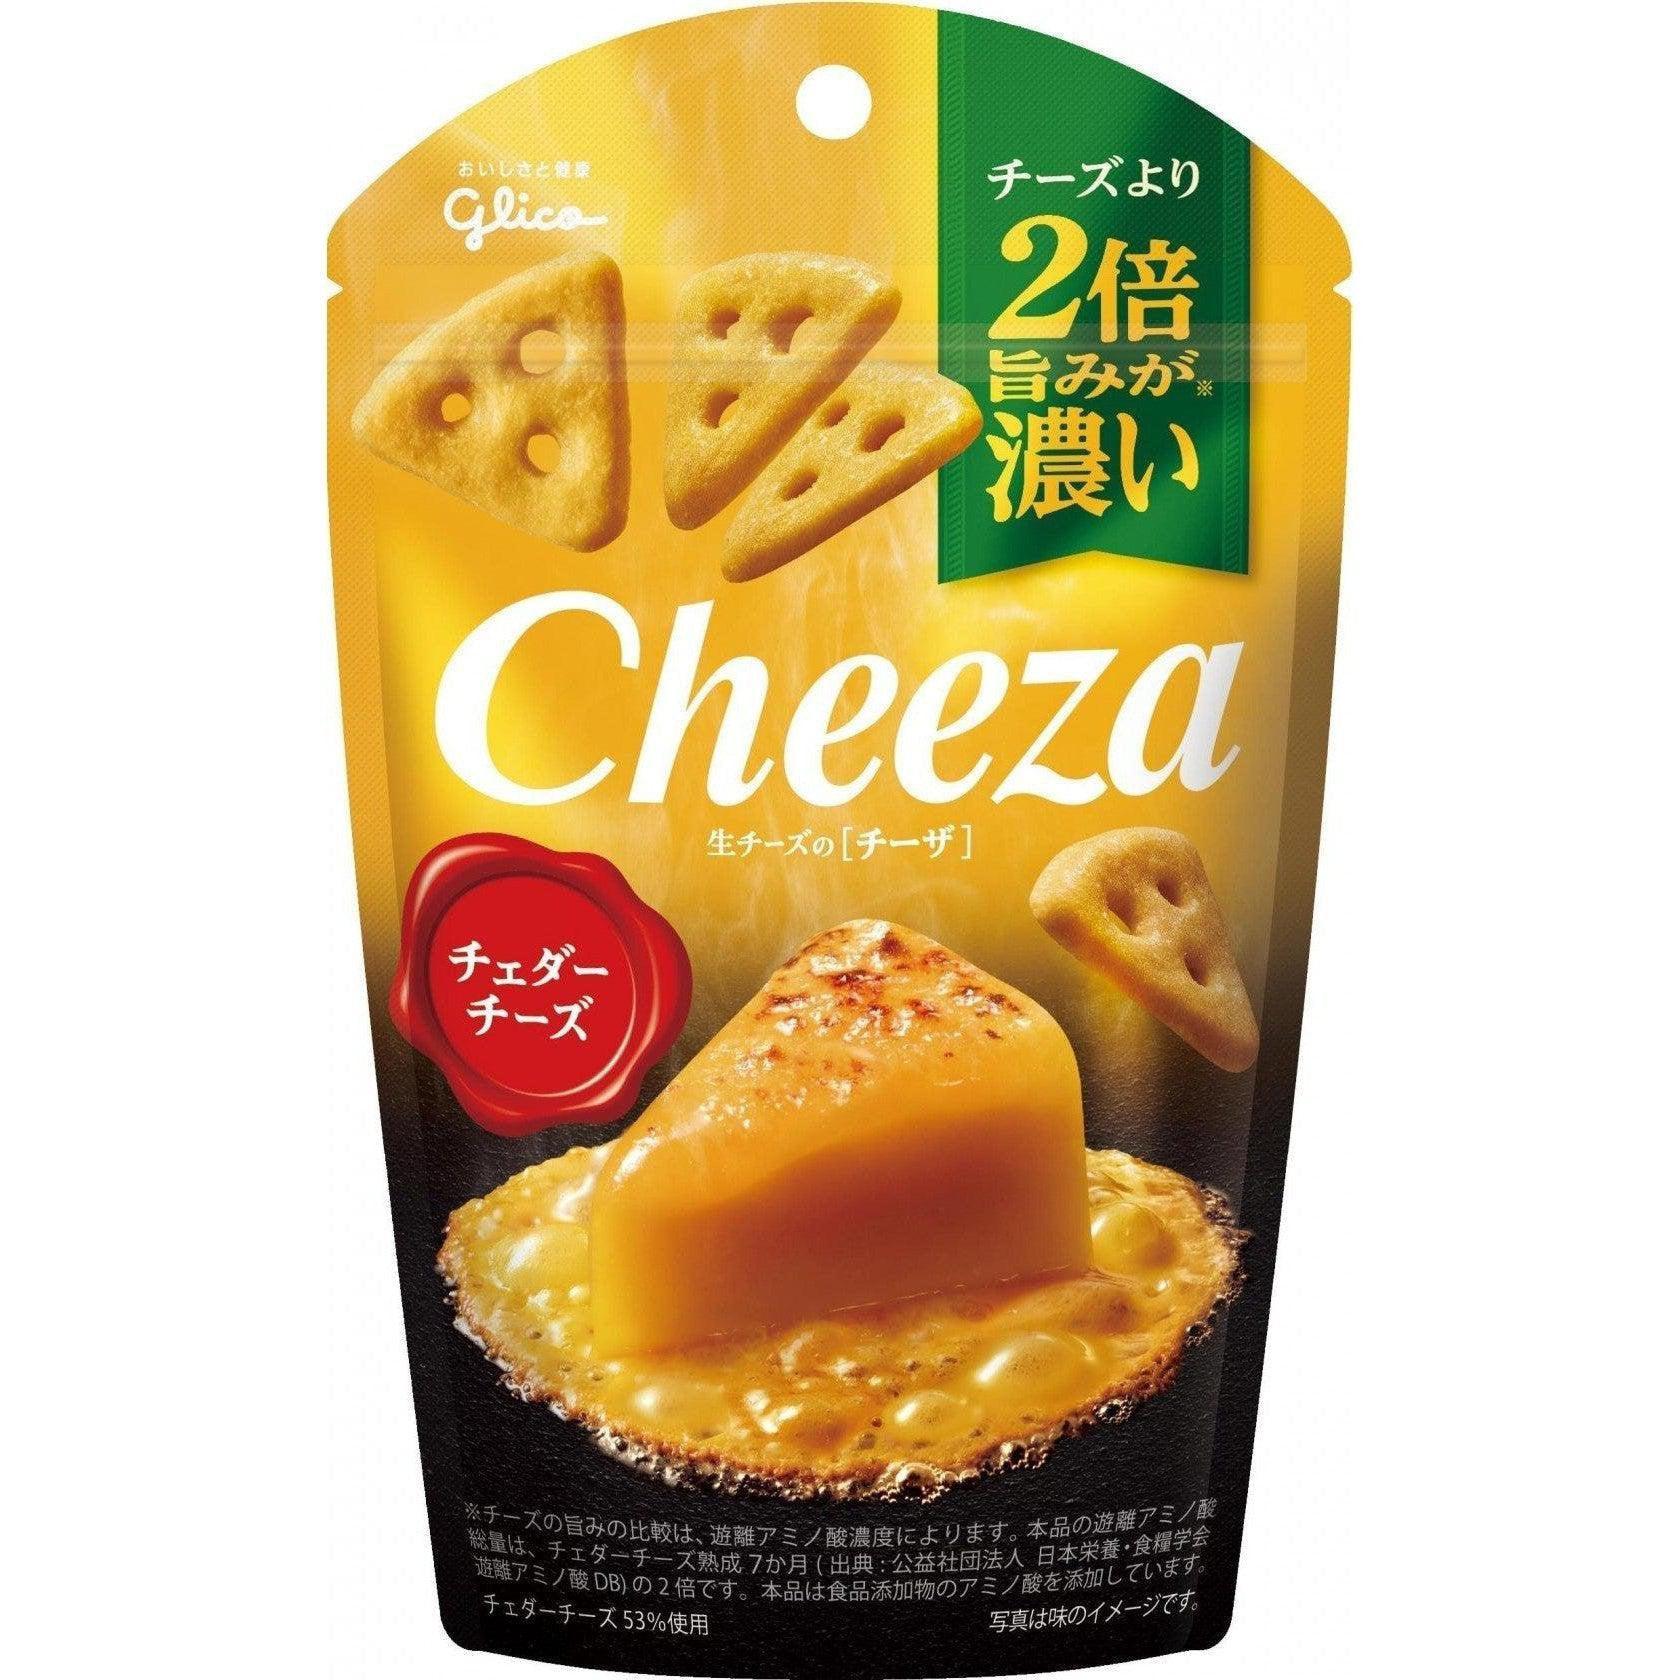 P-1-GLCO-CZACHD-1-Glico Cheeza Cheddar Cheese Crackers 40g.jpg